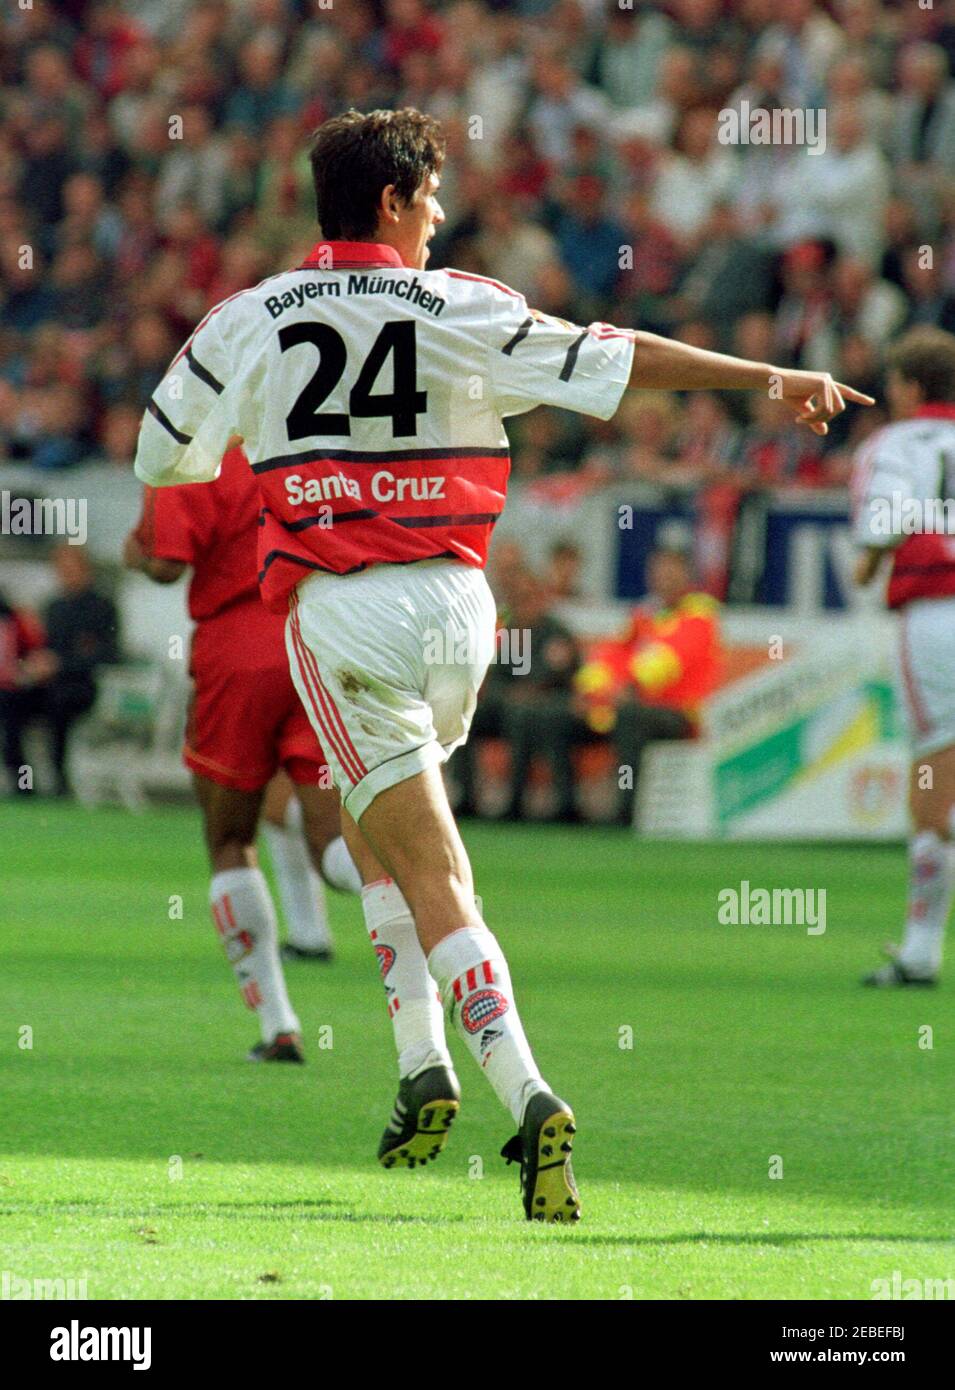 Leverkusen Germany 22.08.1999, Football: Bundesliga season 1999/2000, Bayer 04 Leverkusen (B04, red) vs FC Bayern Munich (FCB, white) 2:0 -  Roque SANTA CRUZ (FCB) Stock Photo